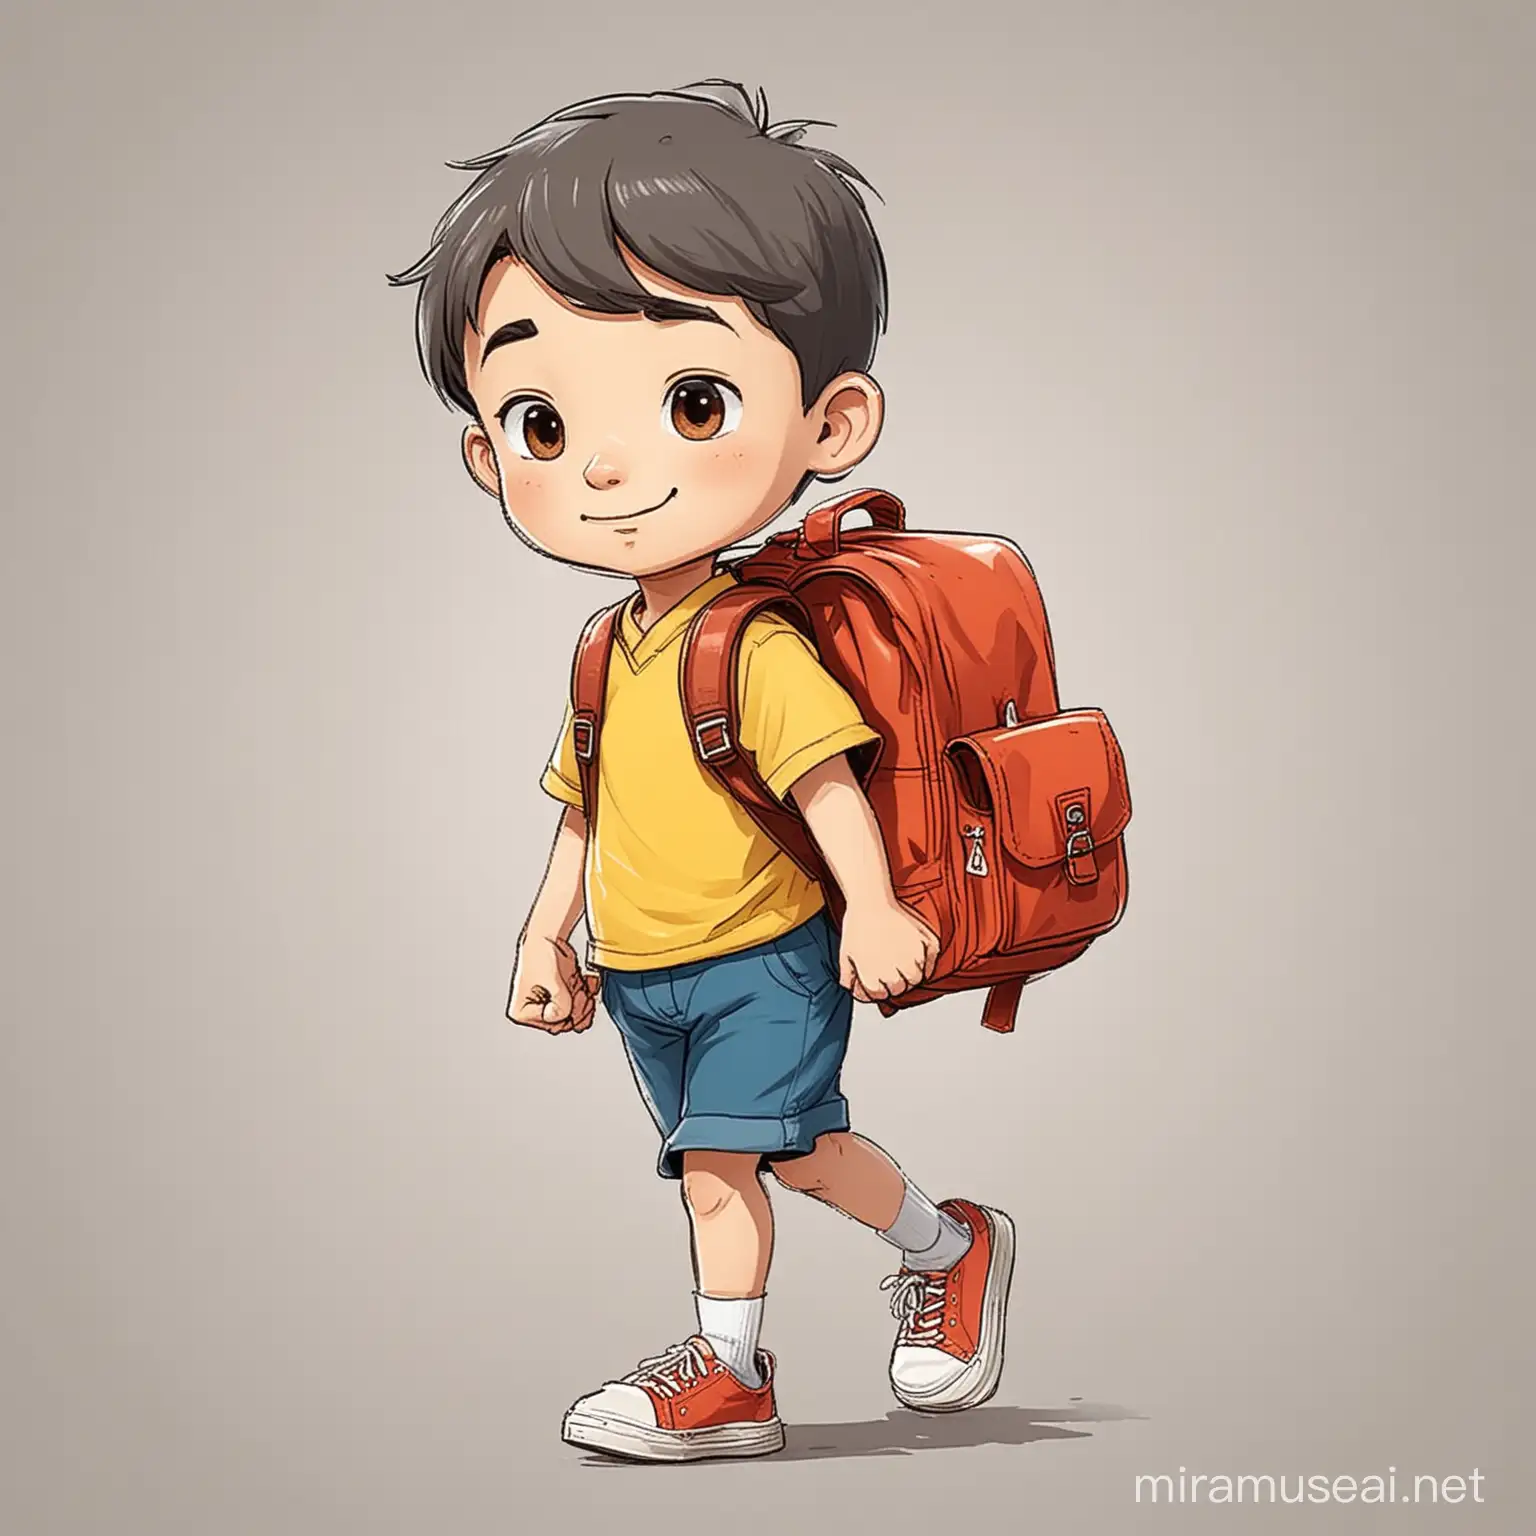 手绘漫画风格，背景为白色，中国小男孩儿，8岁左右，背书包去上学，短发